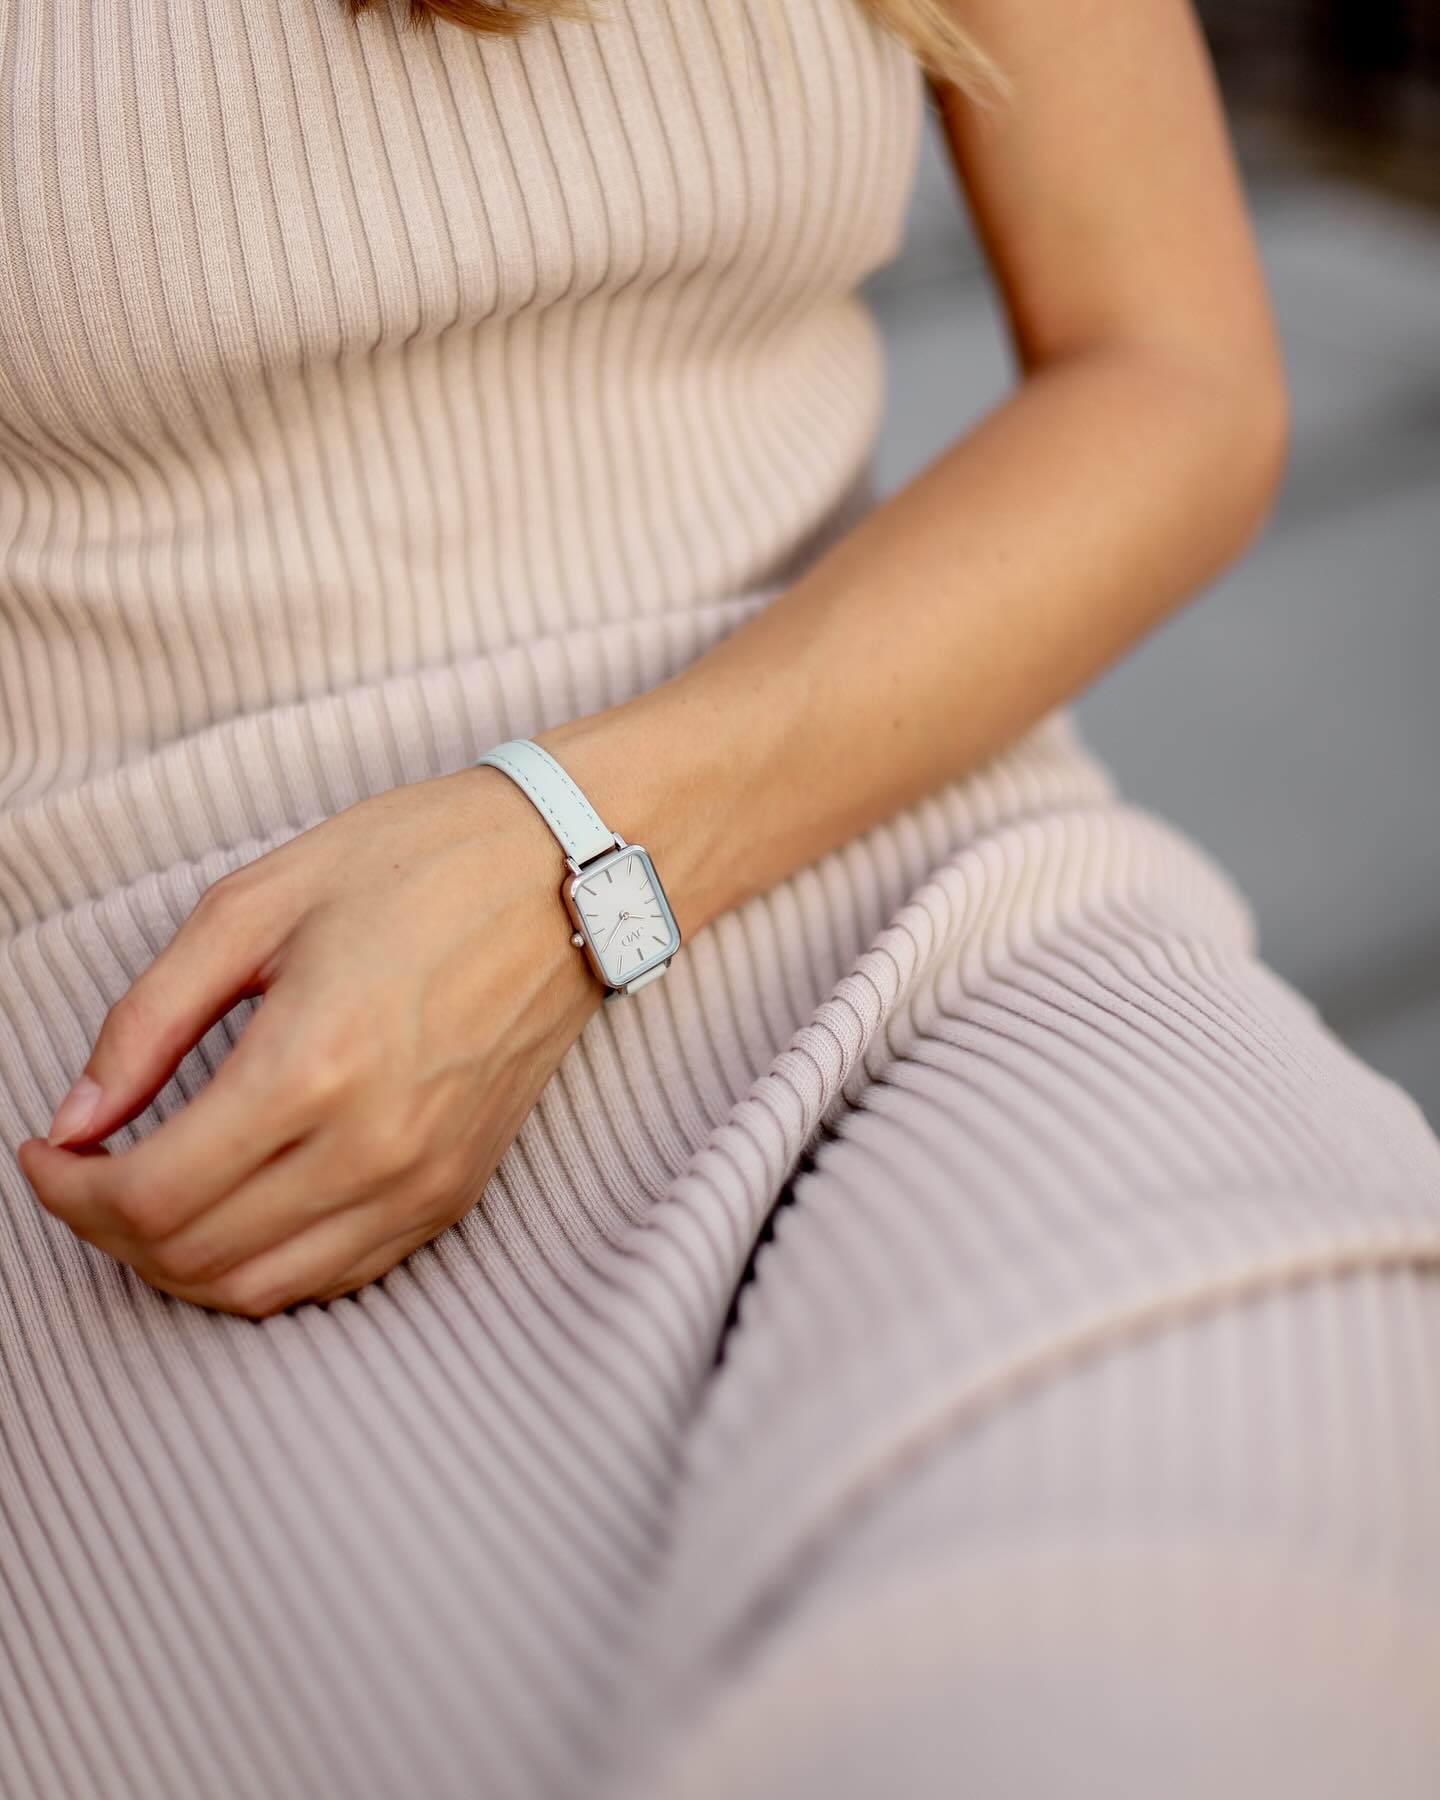 Léto patří barvám! Objevte kouzlo elegance a minimalistického designu s našimi pastelově modrými hodinkami.🦋 

Tyto hodinky jsou dokonalým doplňkem pro každou příležitost, od pracovního dne až po večerní setkání s přáteli.🫶🏻

#JVD #watch #watchessentials #watchaddict #ootd #outfitoftheday #outfit #ootdfashion #details #jewelry